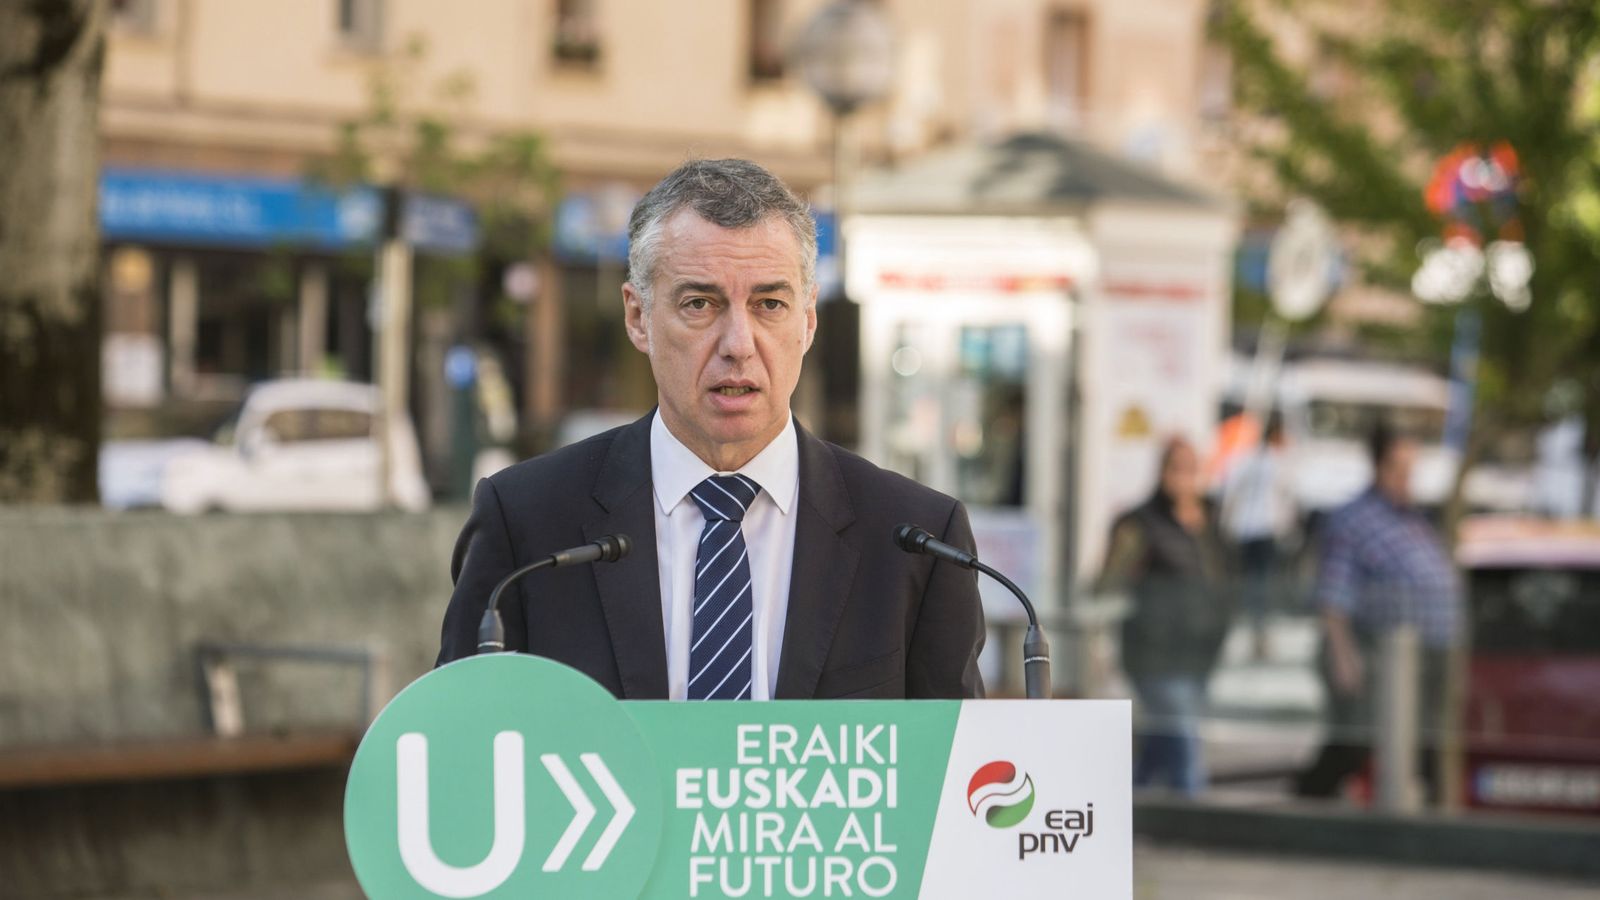 Foto: El lehendakari y candidato a la reelección por el PNV, Iñigo Urkullu, en un acto electoral en Vitoria. (EFE)